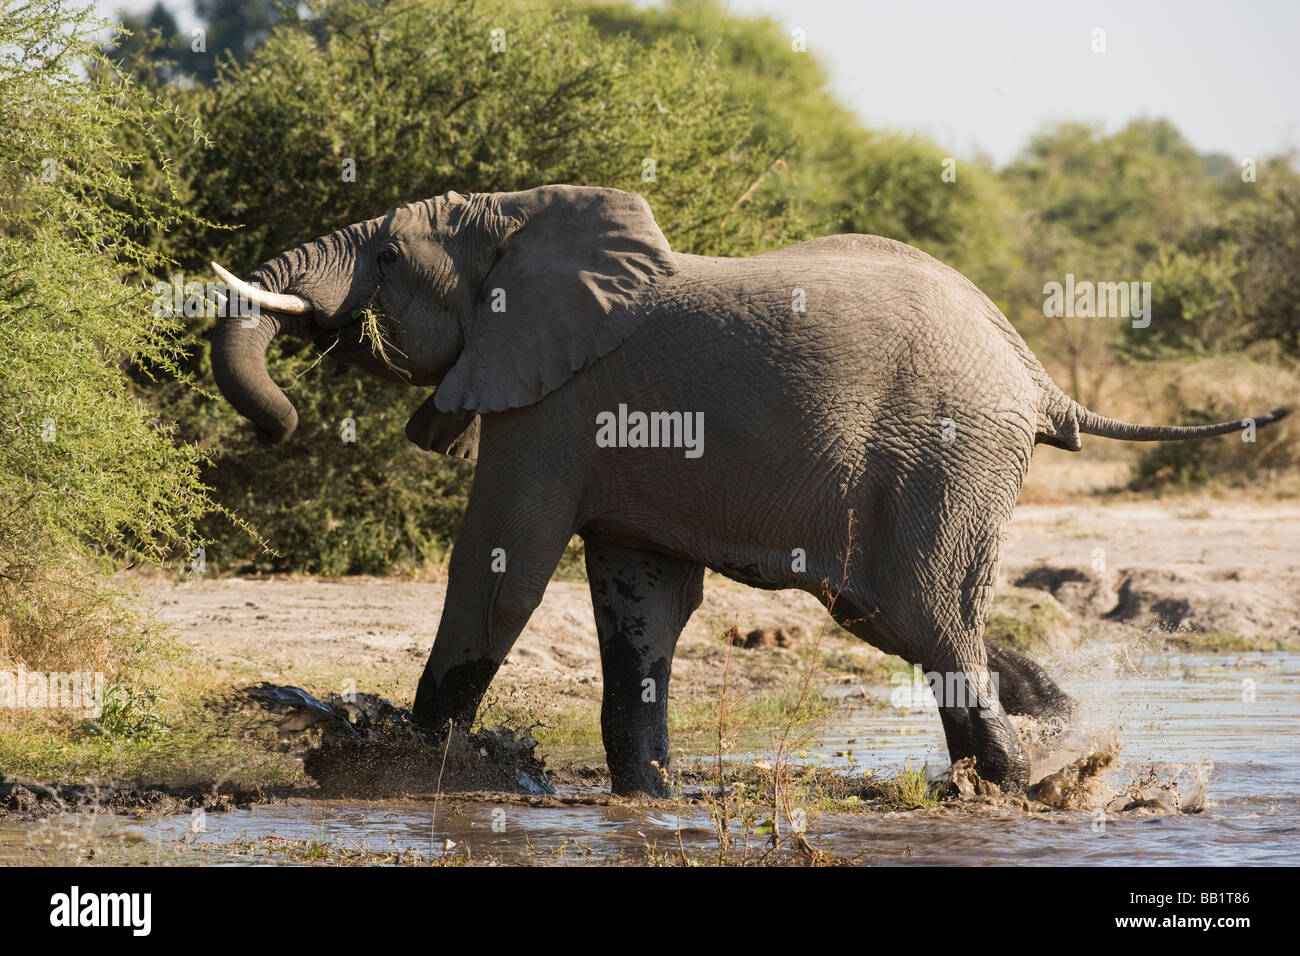 Azione di arresto close up wild elefante africano in esecuzione sul fiume gli spruzzi di acqua agitando il suo capo e tronco in alto la coda mentre mangia verdi Foto Stock